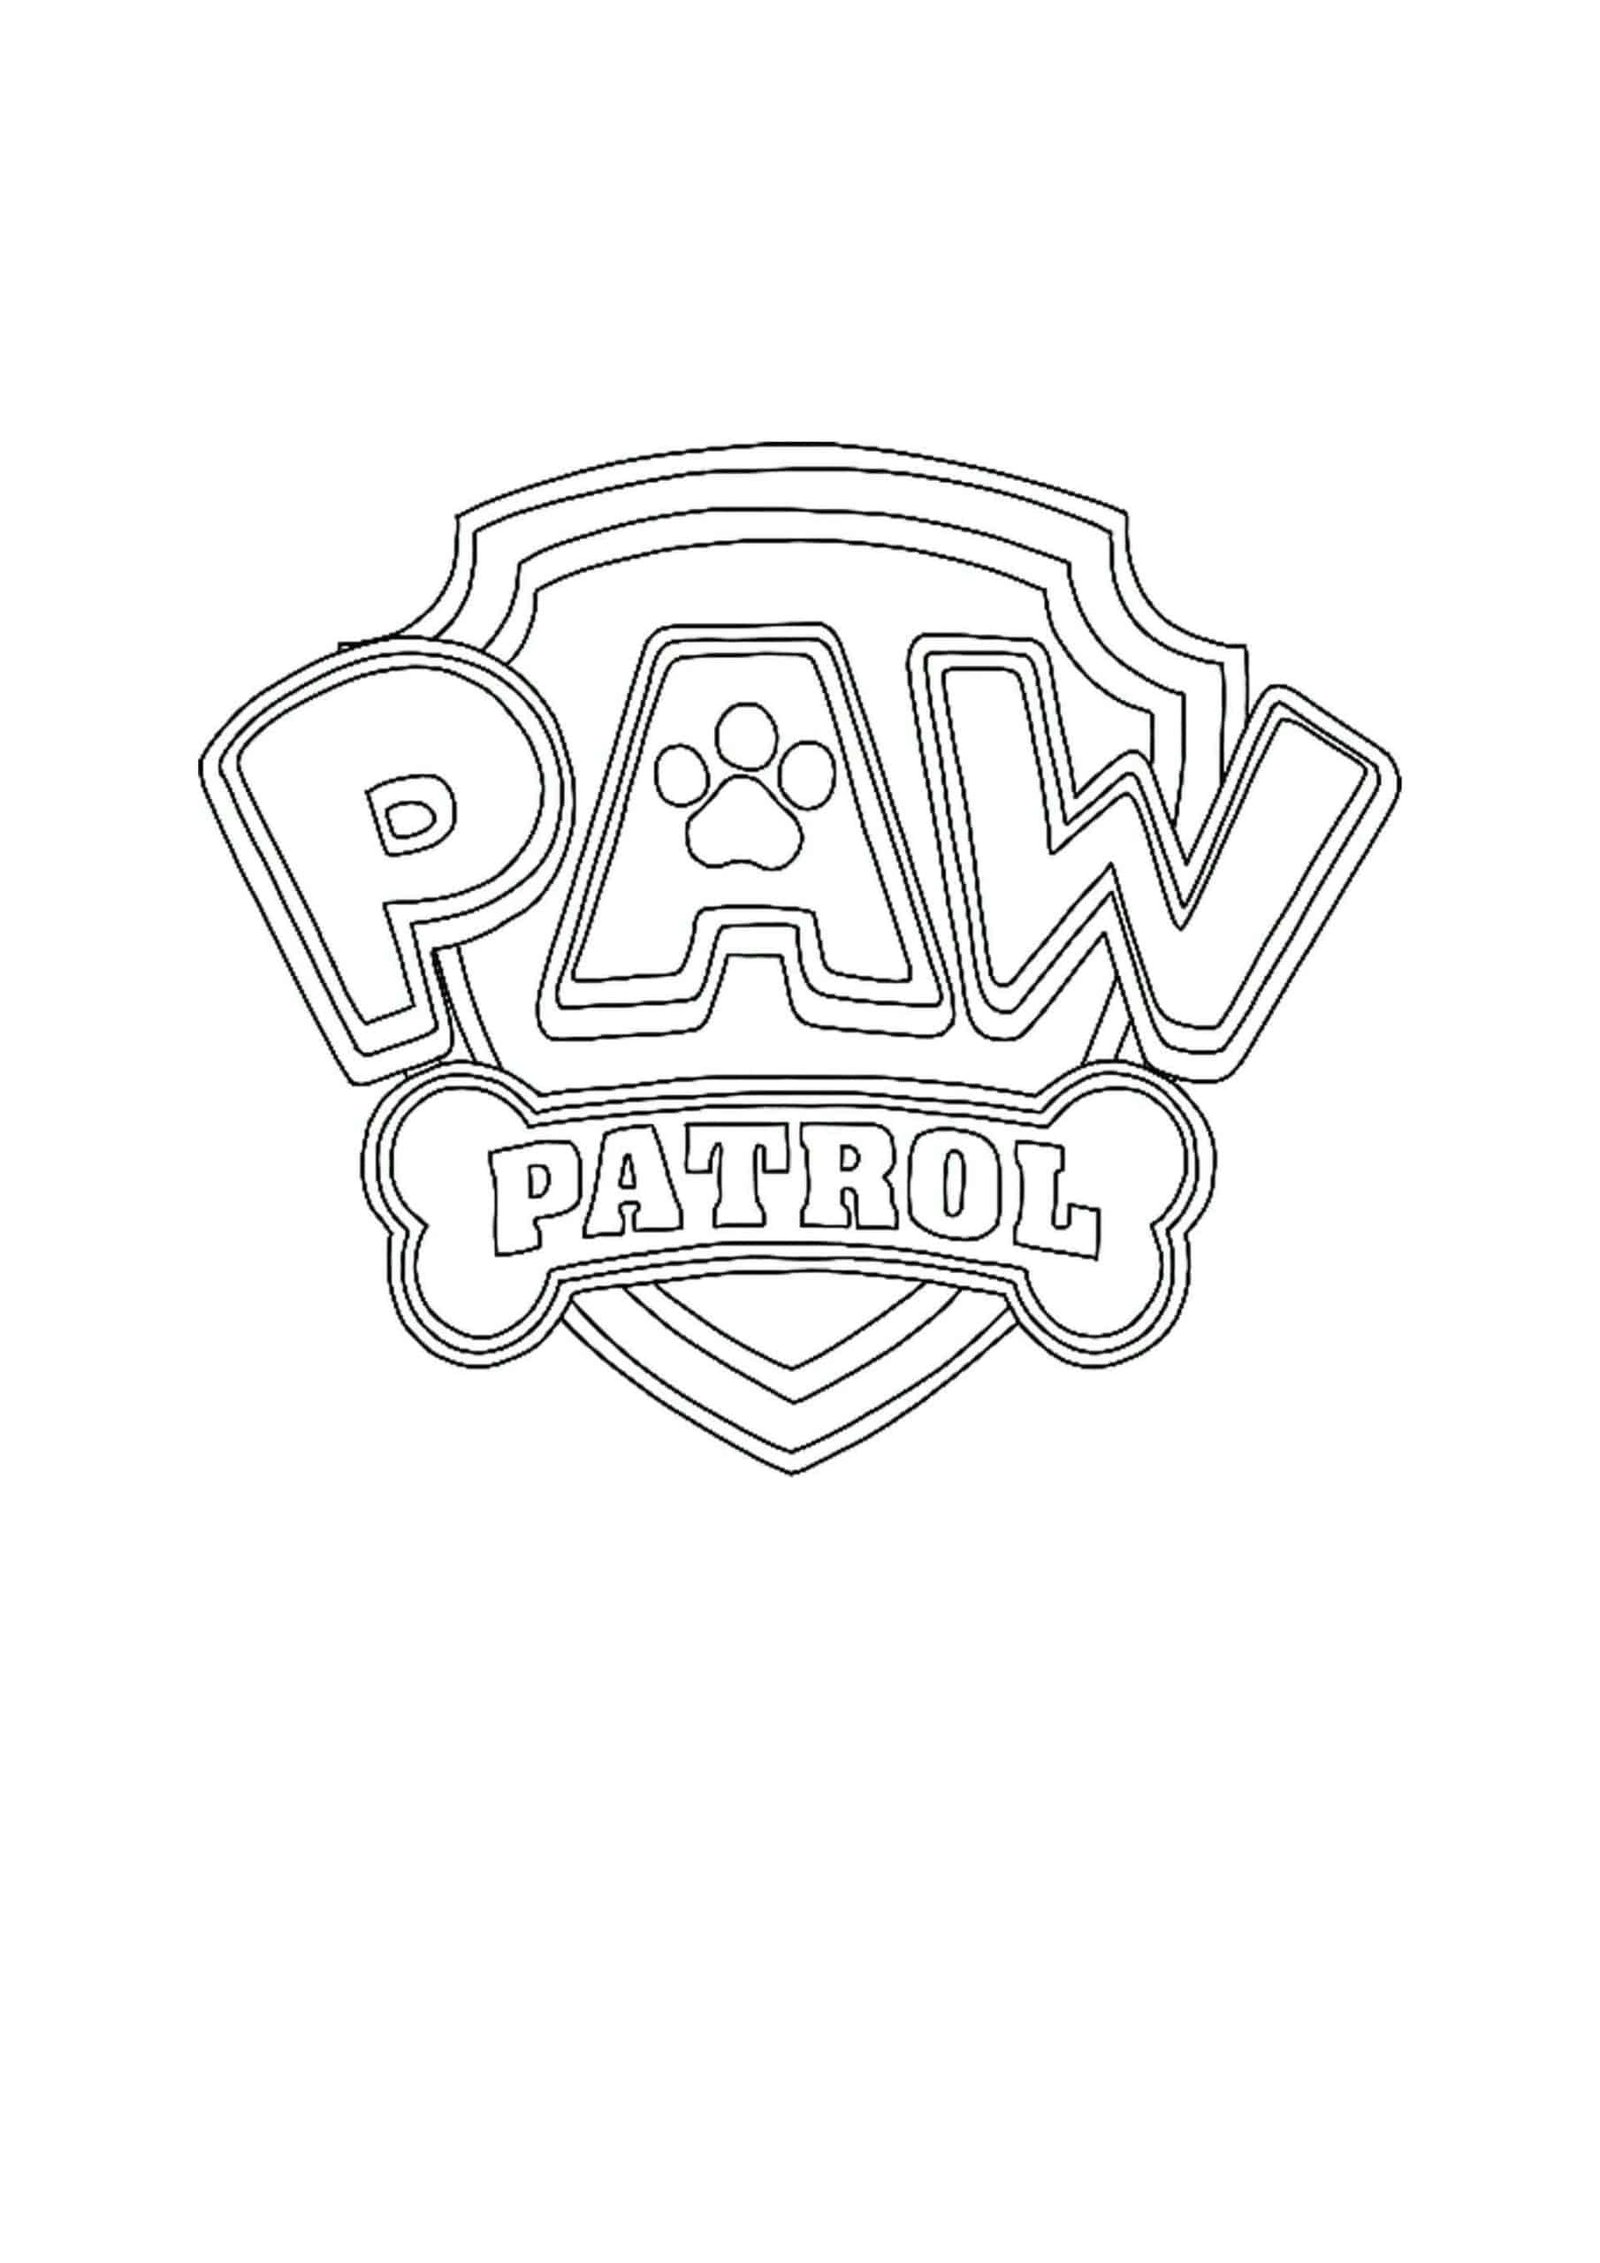 Paw Patrol Logo coloring page